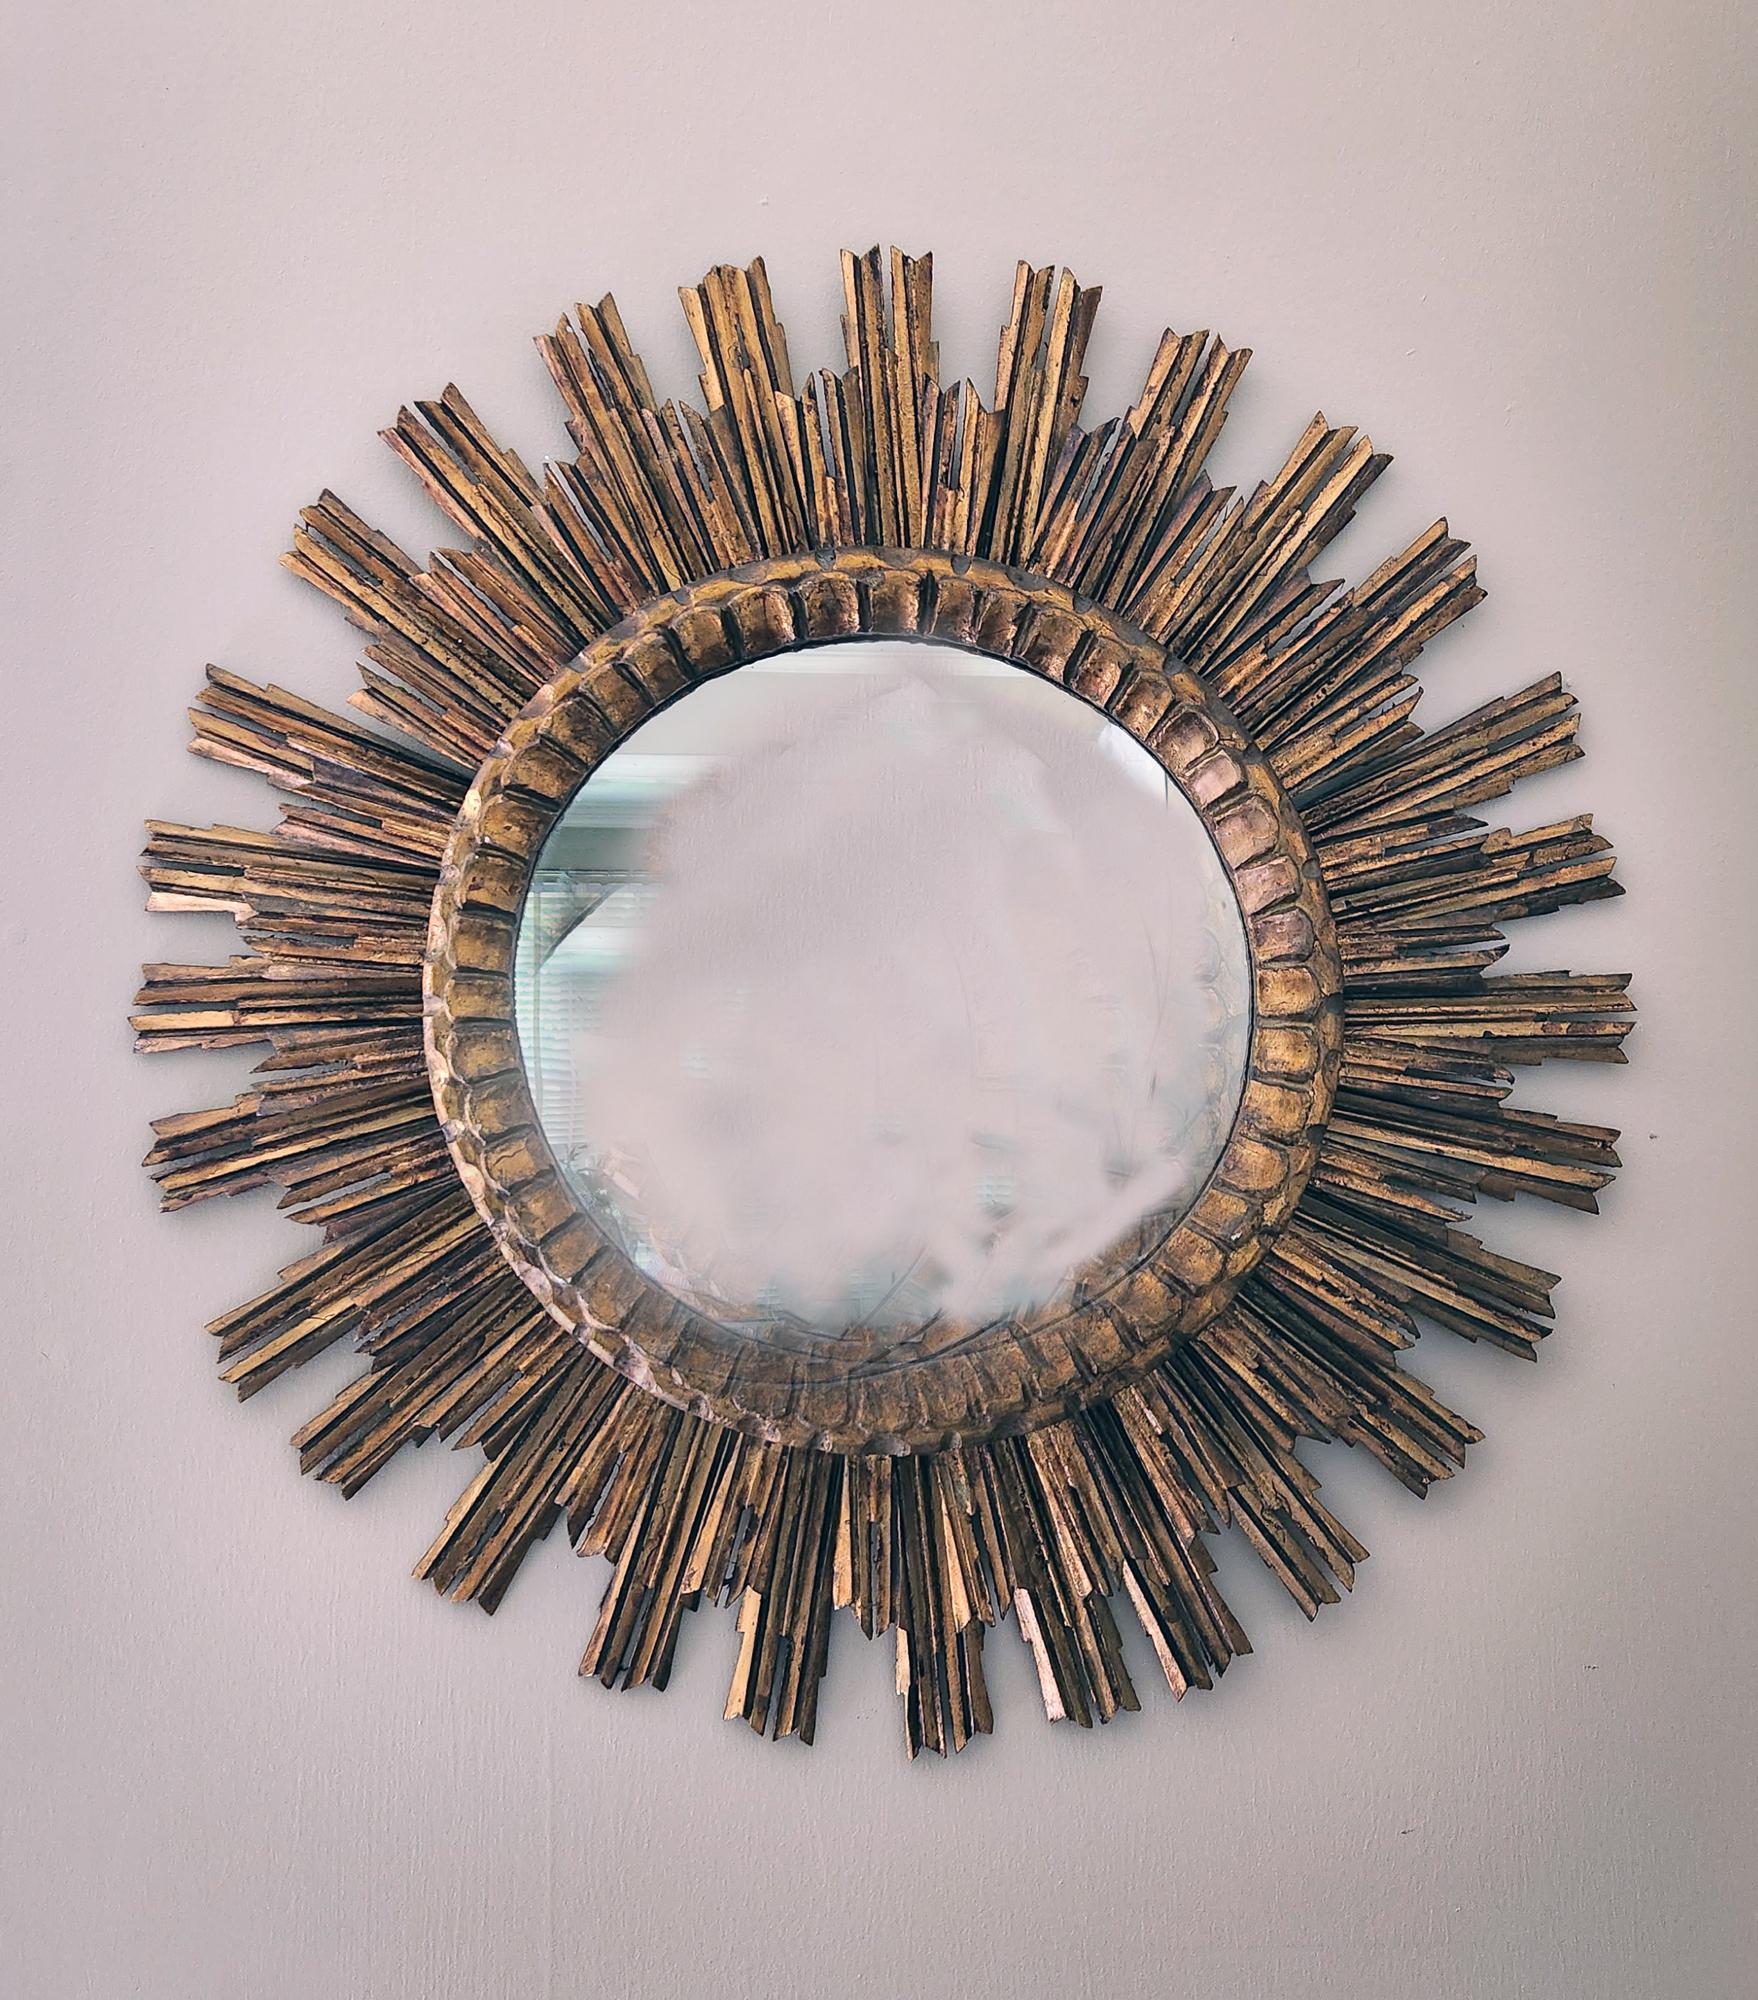 Vintage Sunburst Circular Giltwood Mirror,
Spanisch,
1940s

Ein runder Spiegel im spanischen Barockstil mit einer doppelten Einfassung aus geformten Sonnenstrahlen mit sich überlappenden, strahlenden Blättern, die sorgfältig um den zentralen Spiegel